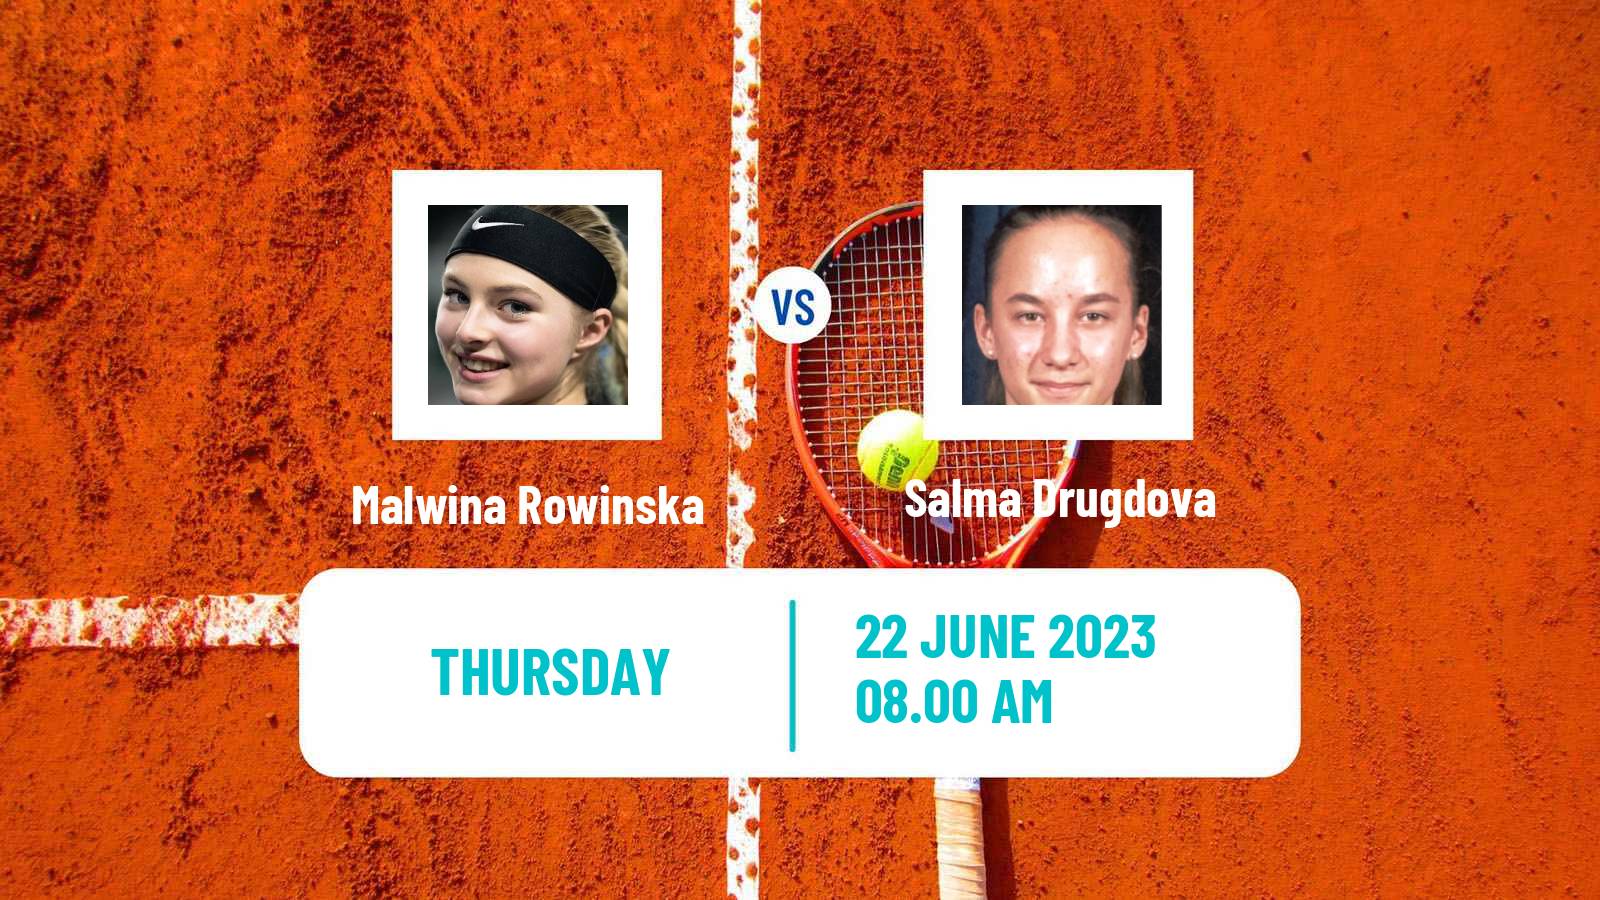 Tennis ITF W15 Gdansk Women Malwina Rowinska - Salma Drugdova